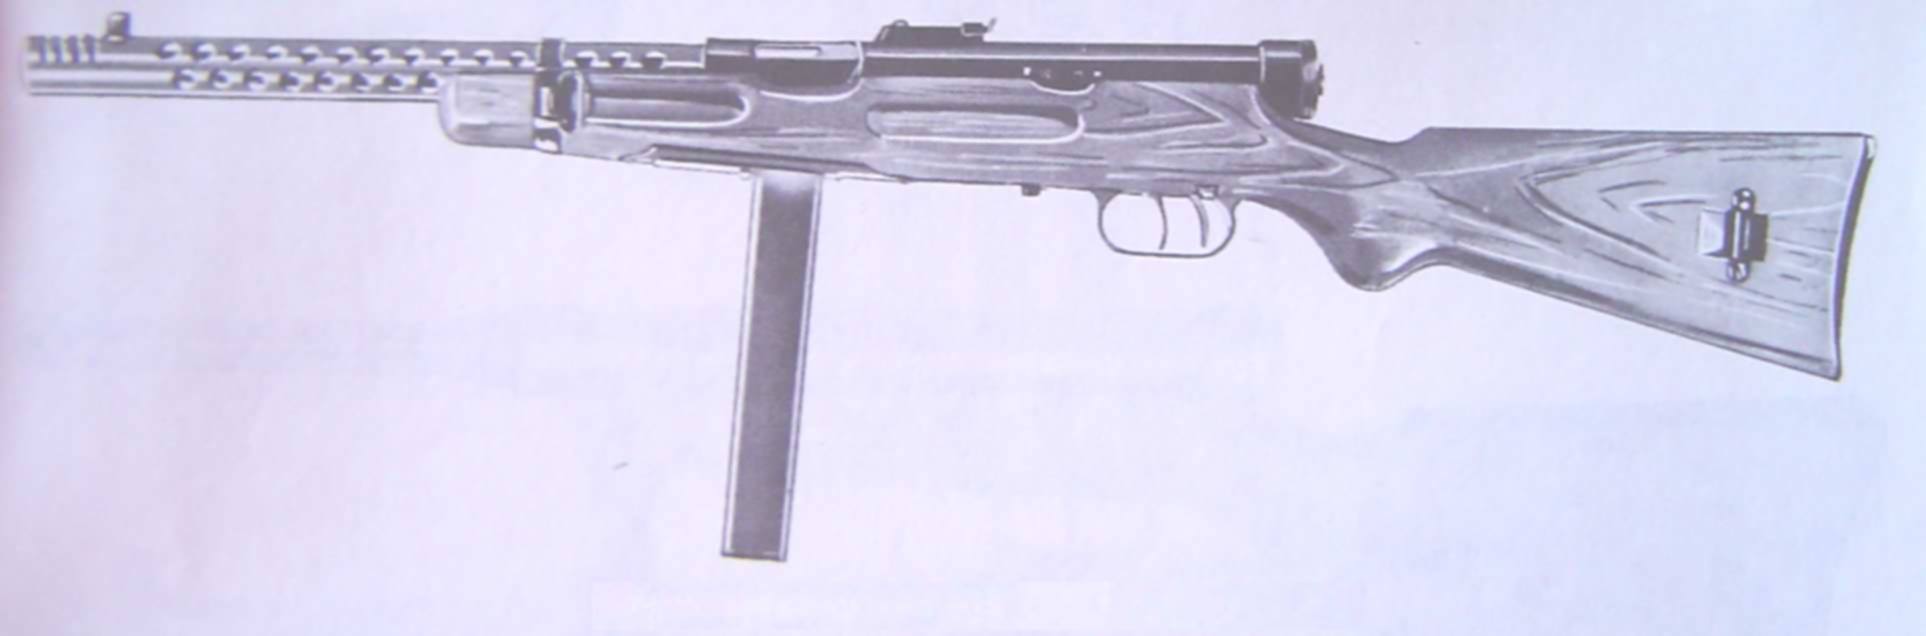 Beretta Mle 1938 A